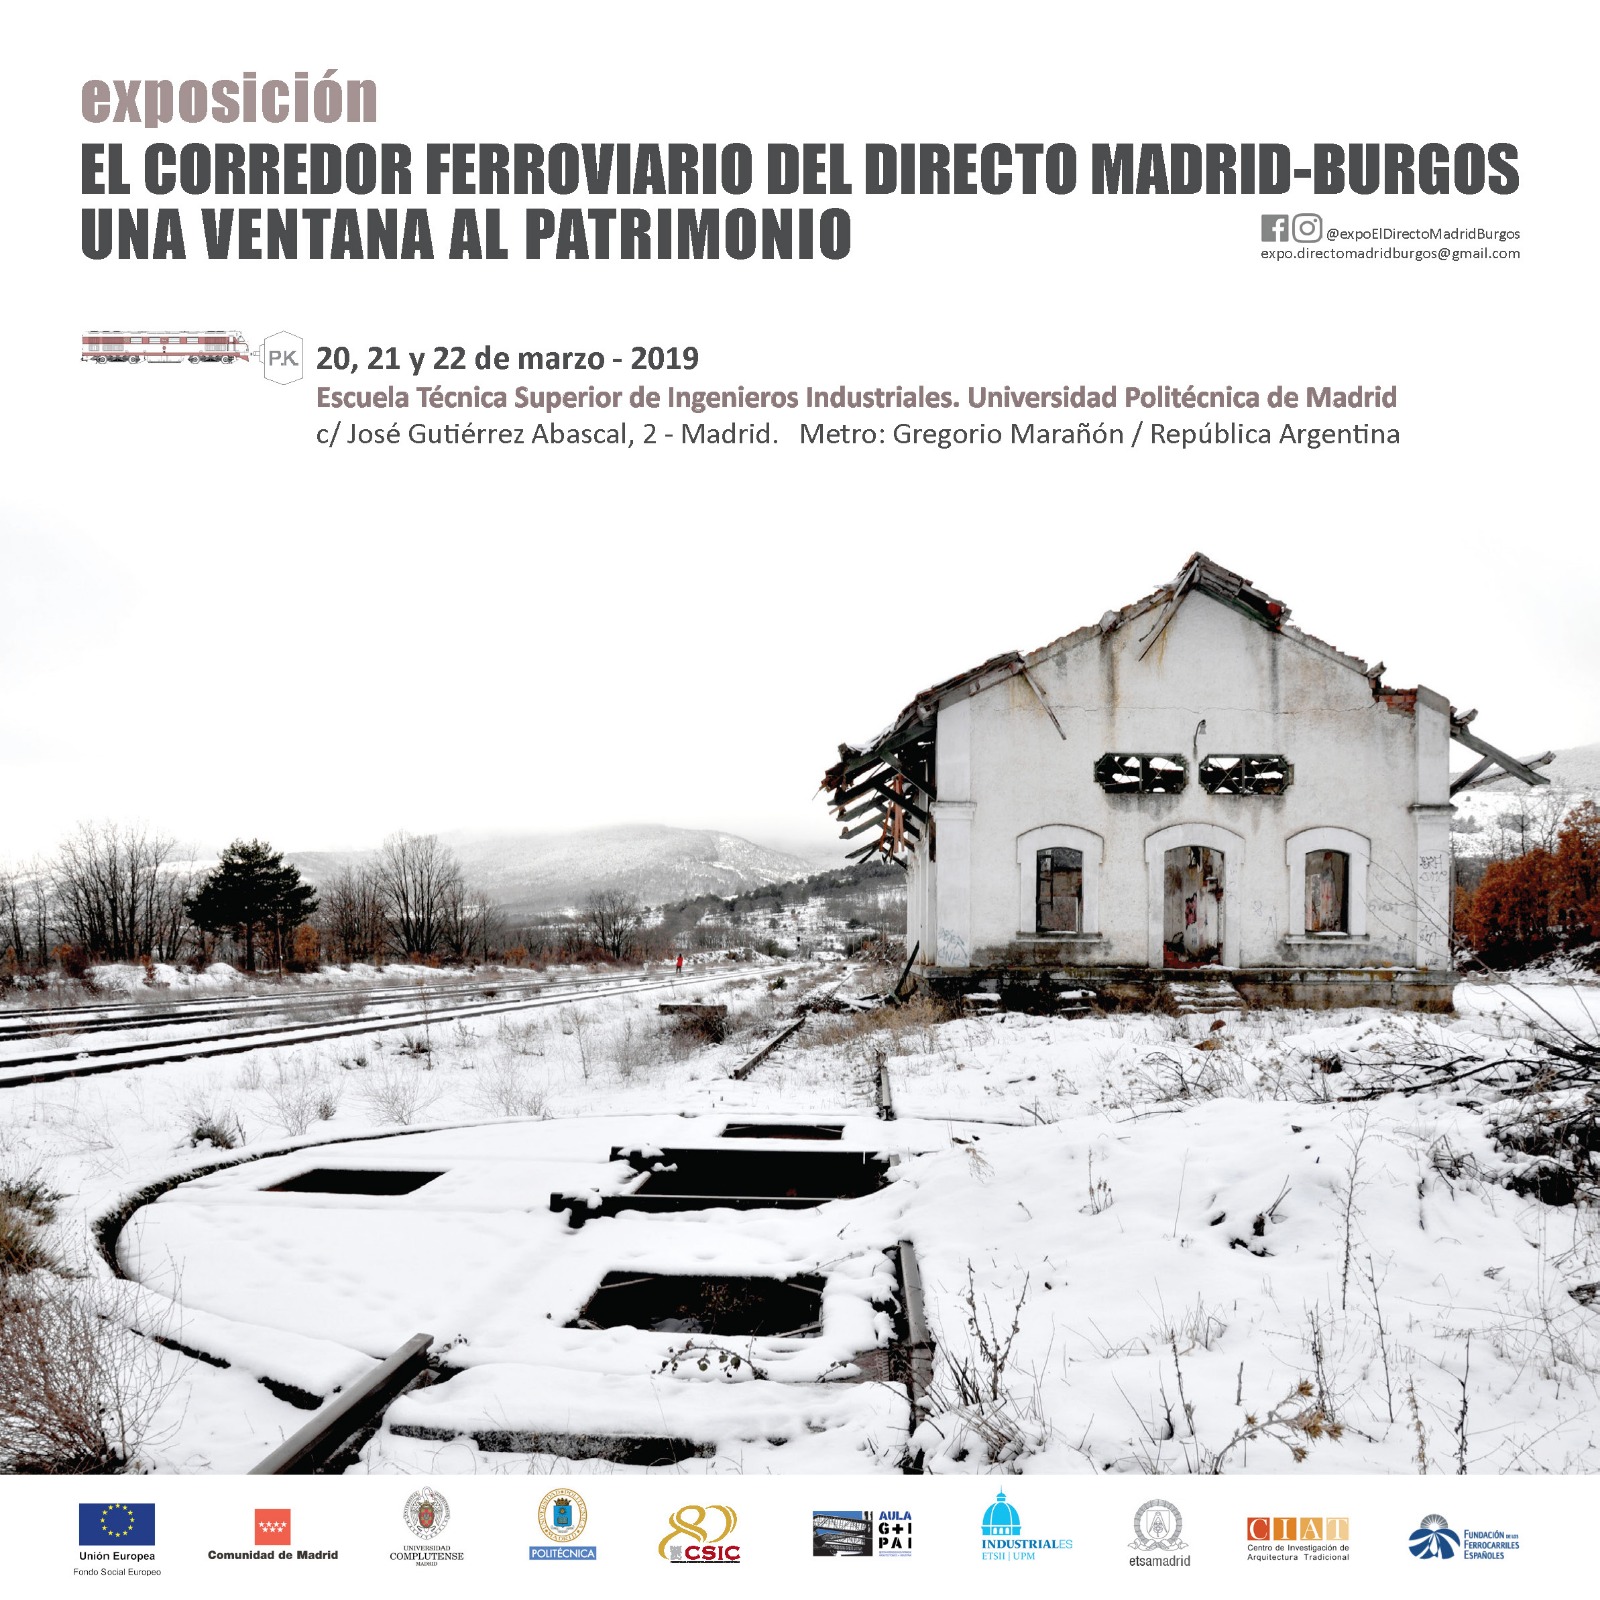 Se inaugura la exposición "El corredor ferroviario del directo Madrid-Burgos"